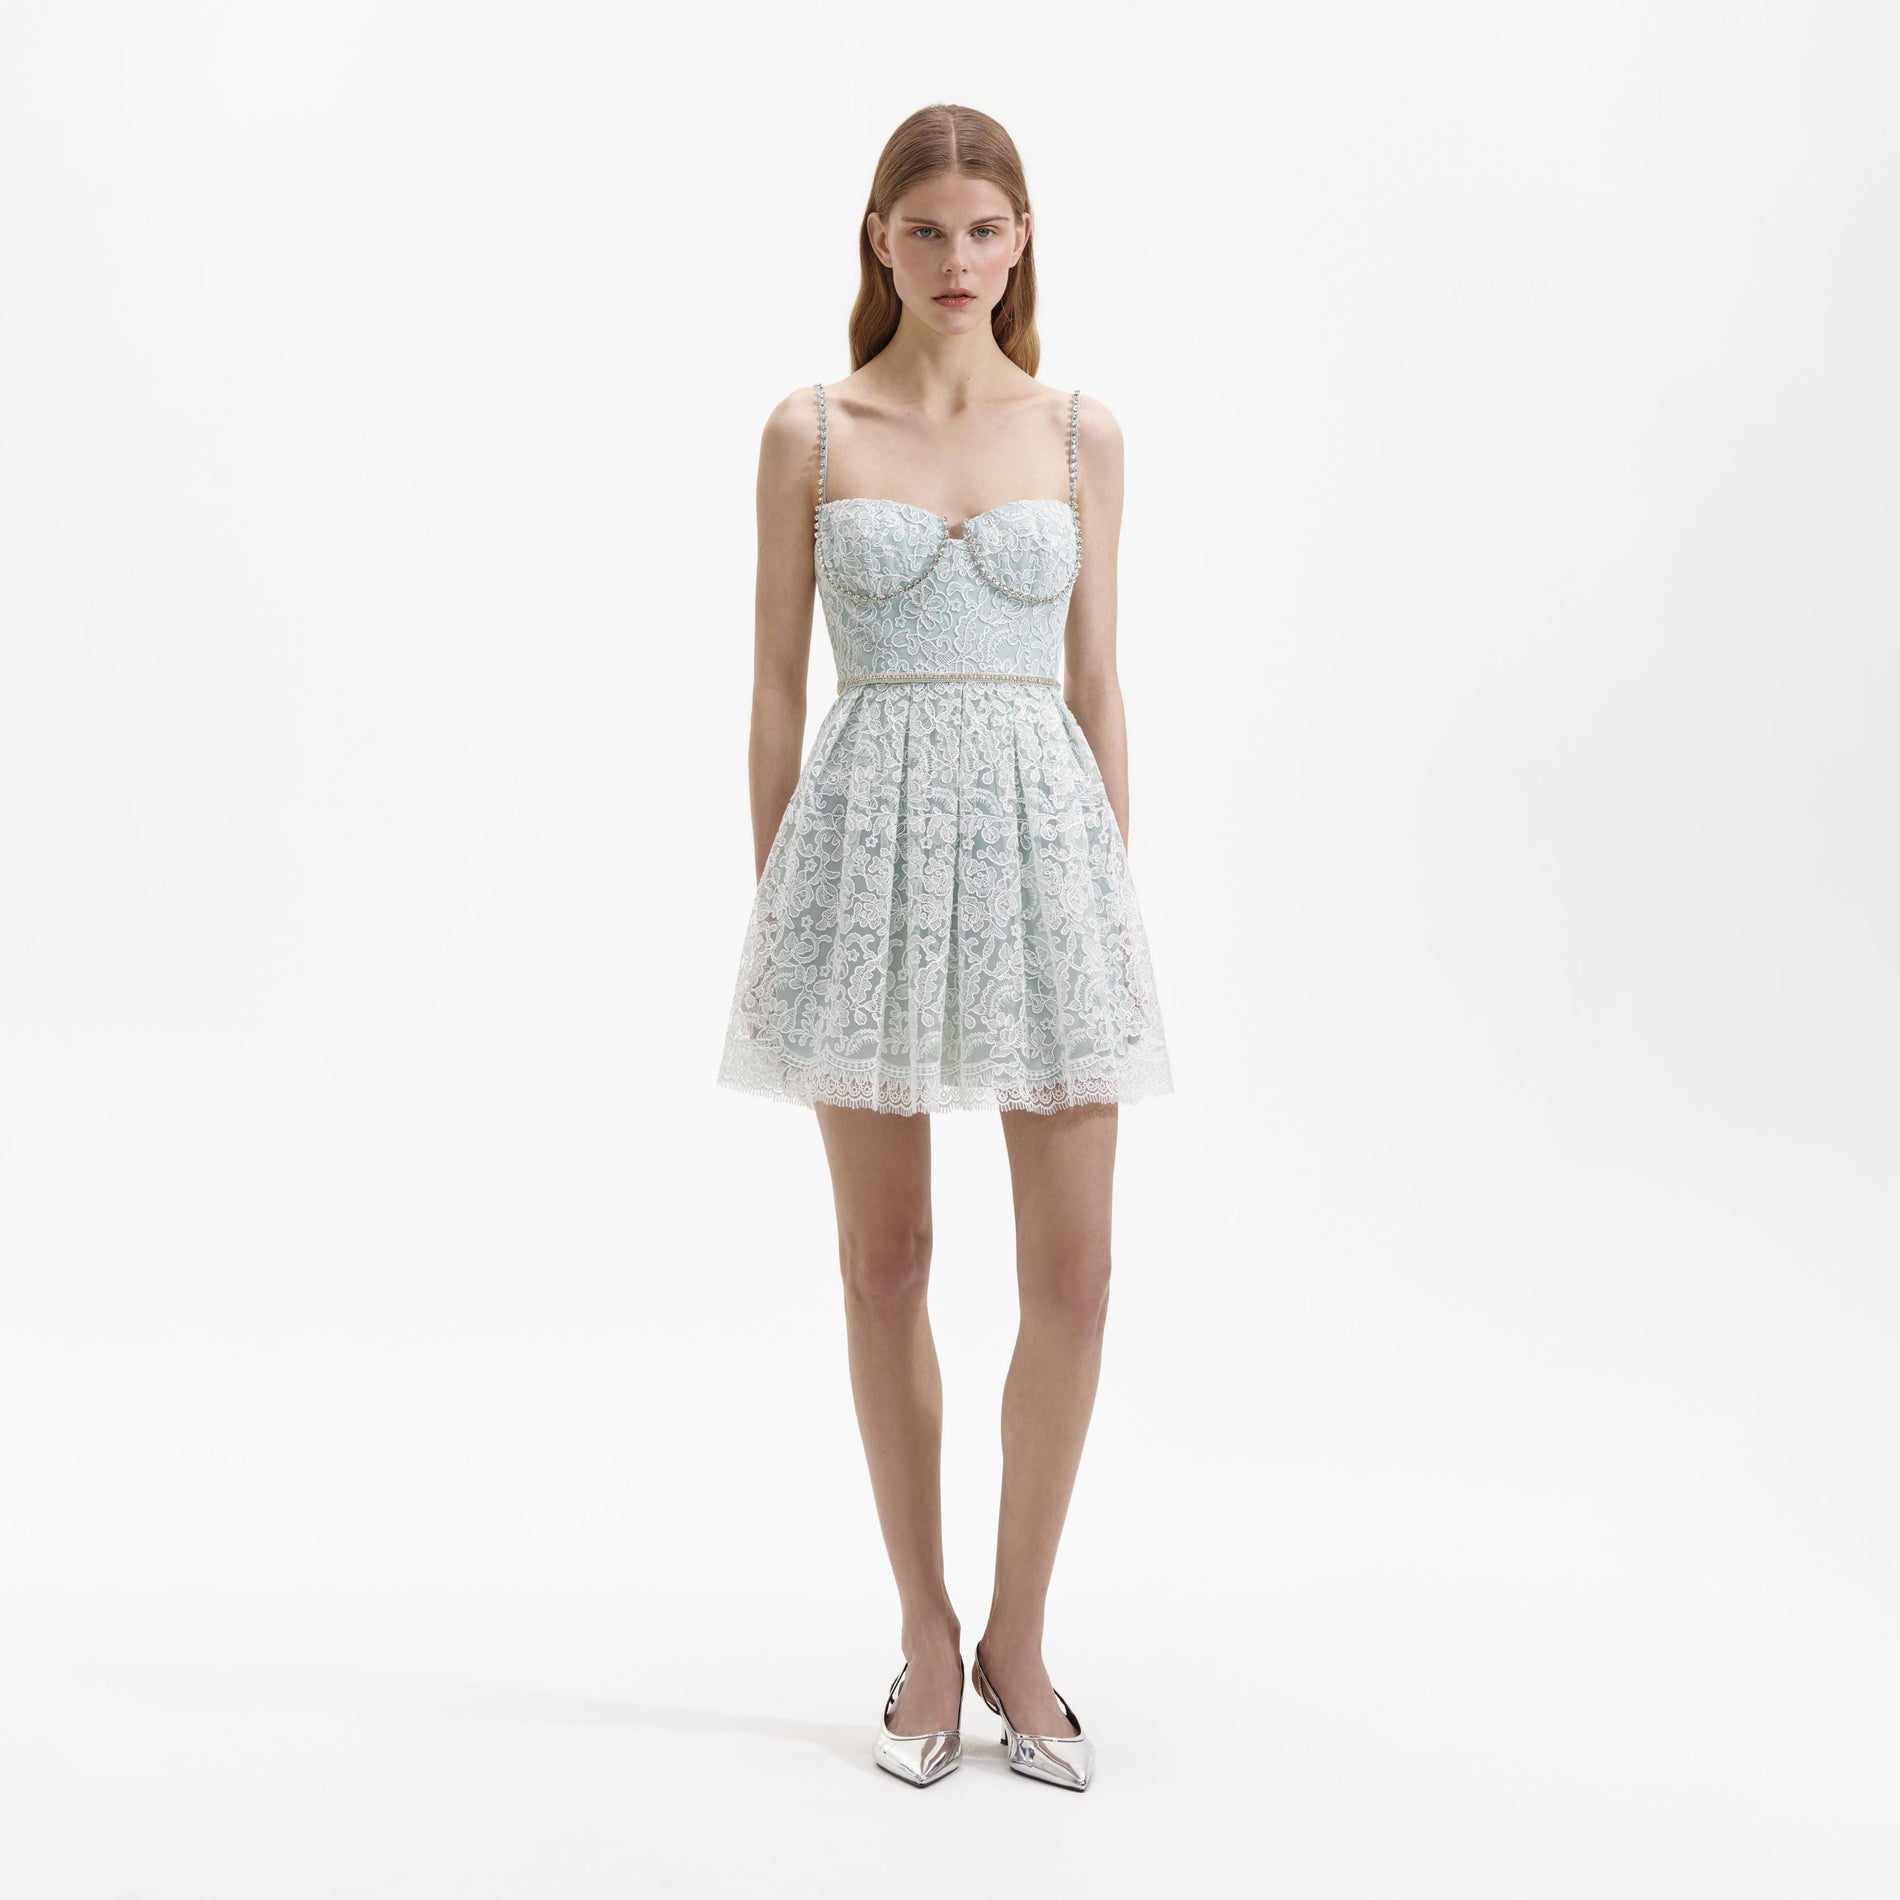 White Dresses for Women: Mini, Slit, & Ruffle